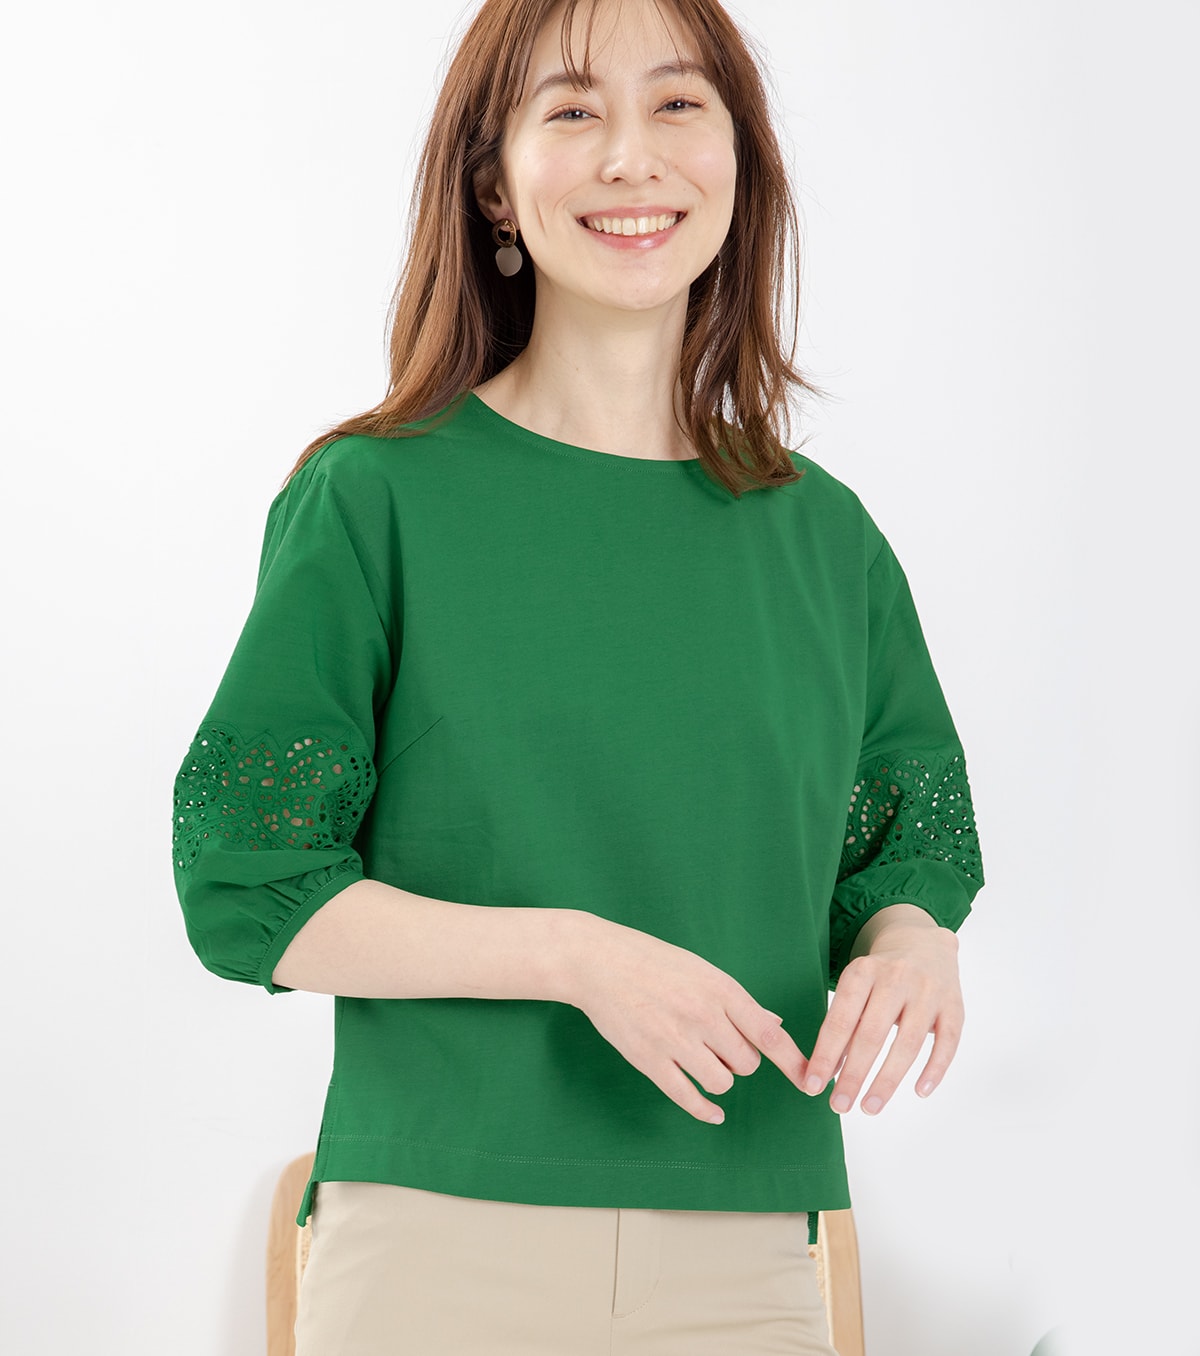 袖カットレースプルオーバー・グリーンを着用している女性の写真